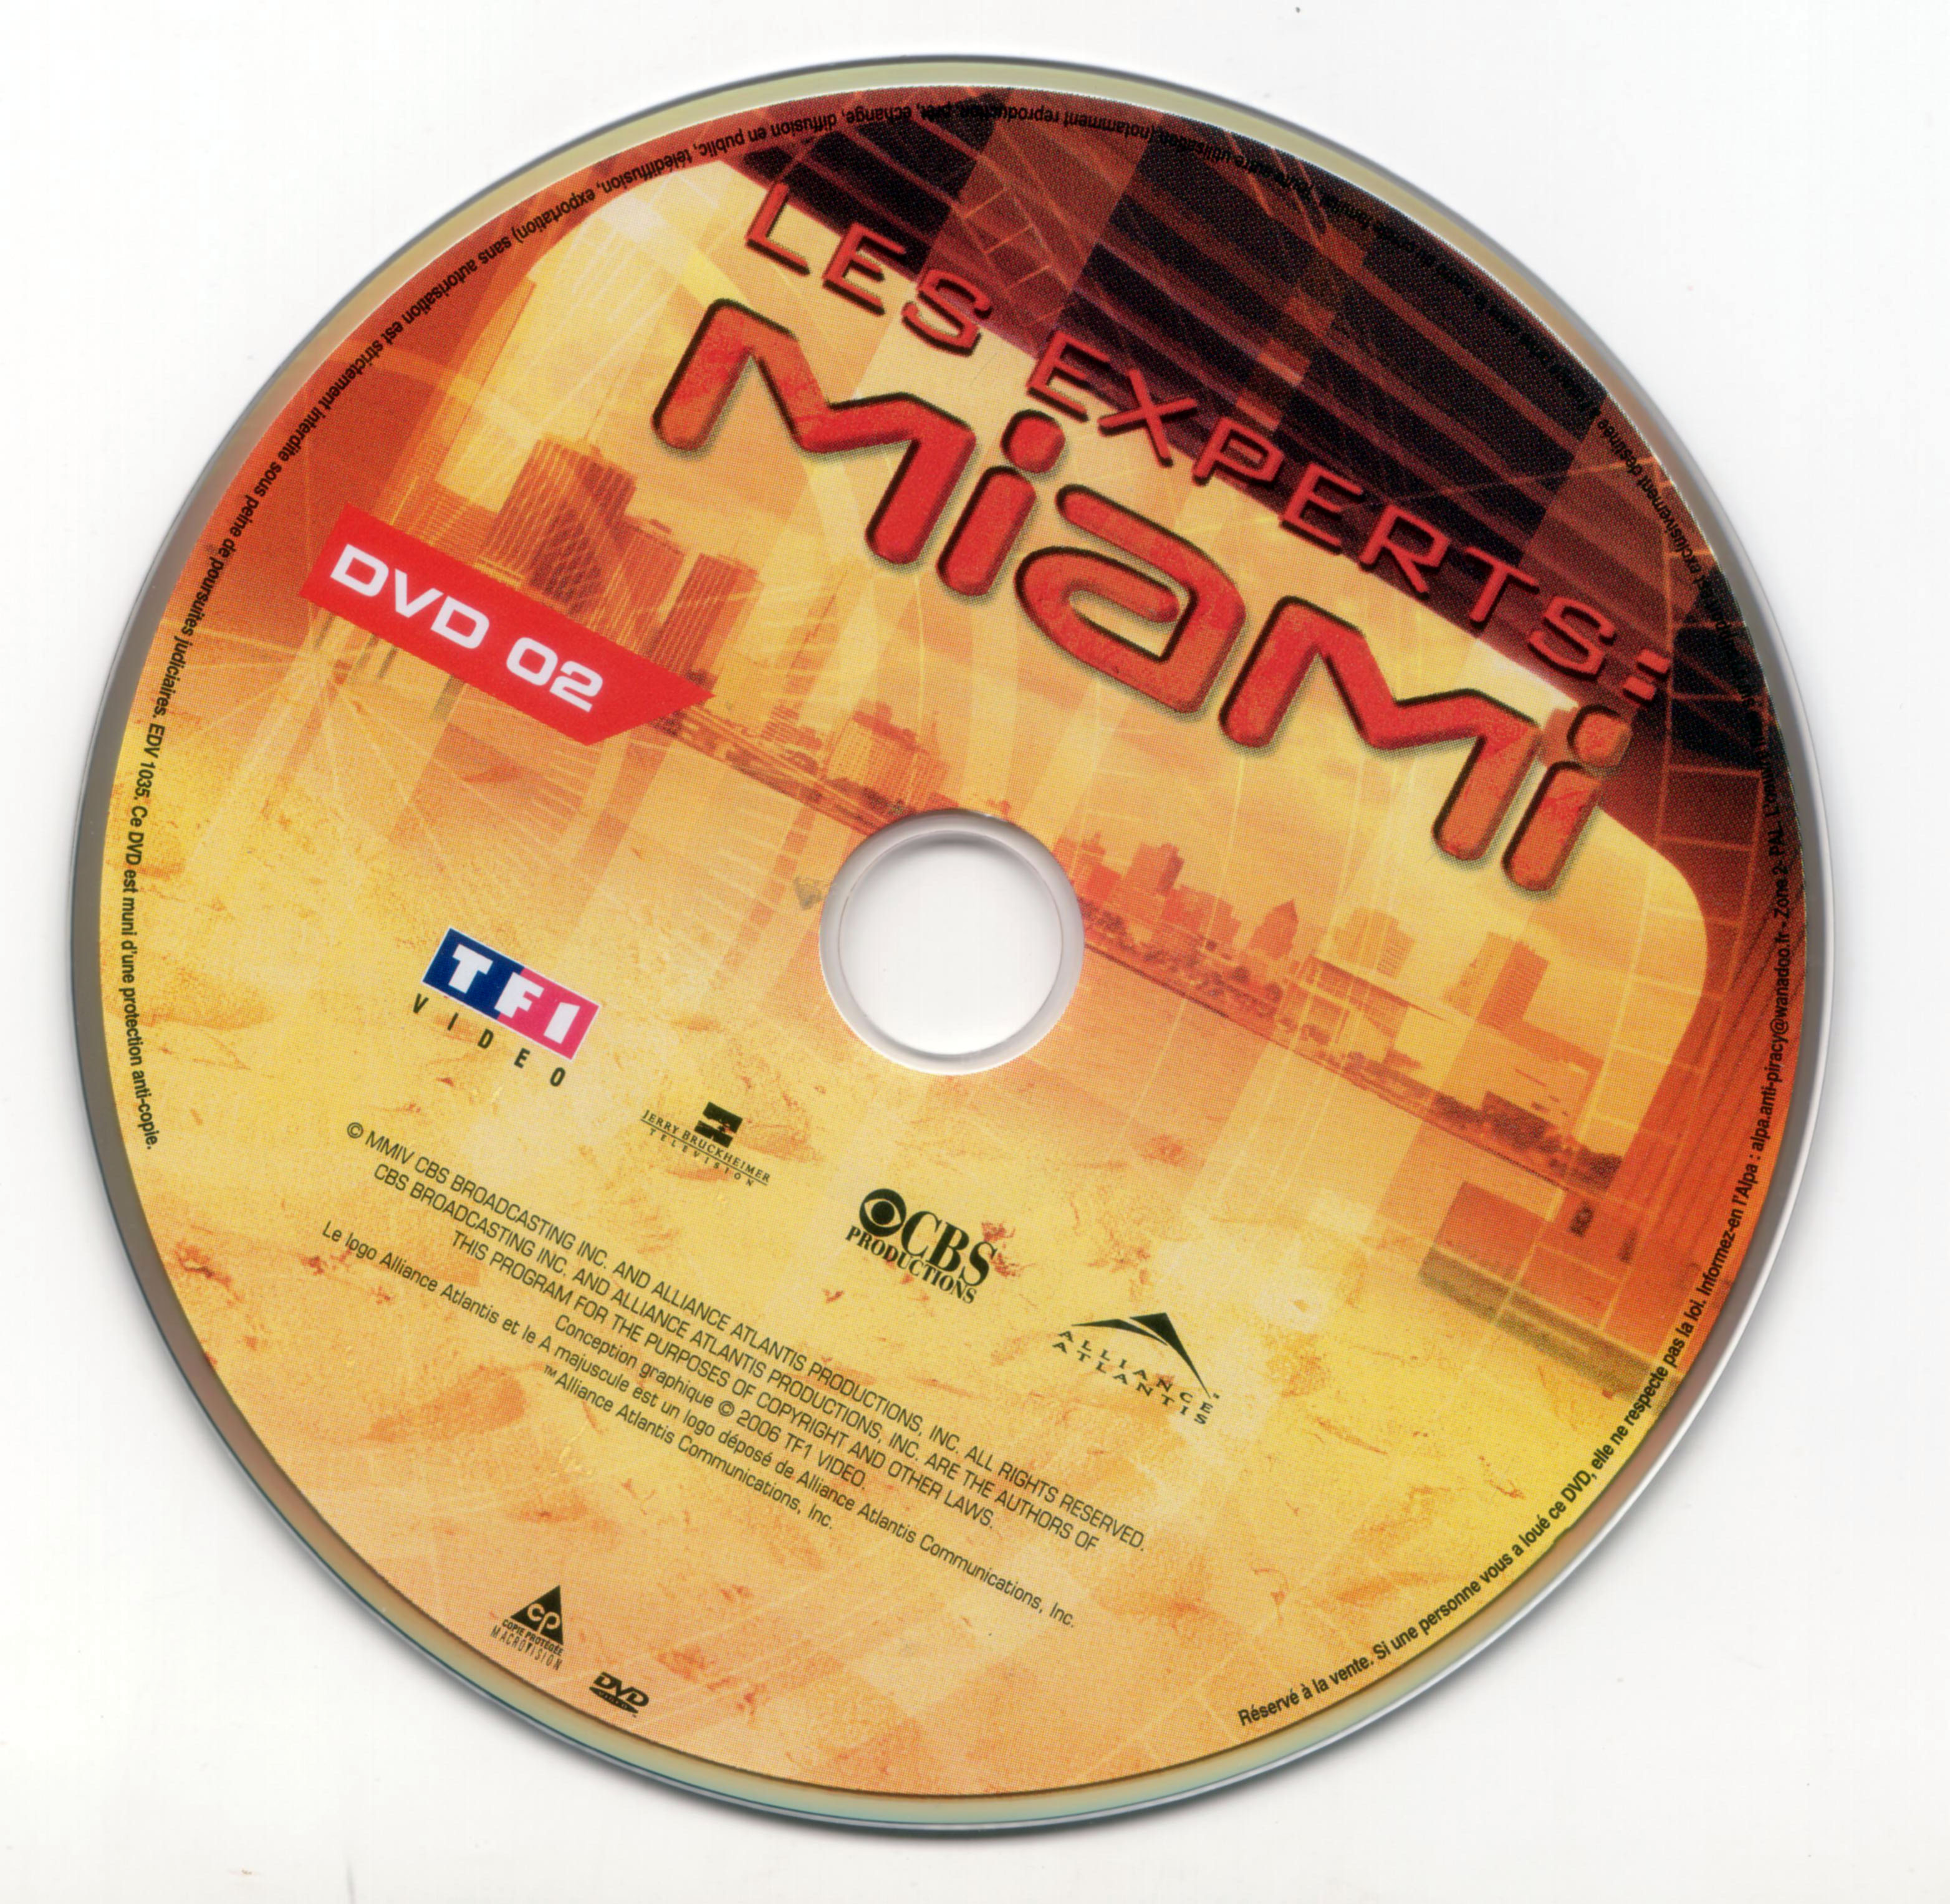 Les experts Miami Saison 2 vol 2 DISC 2